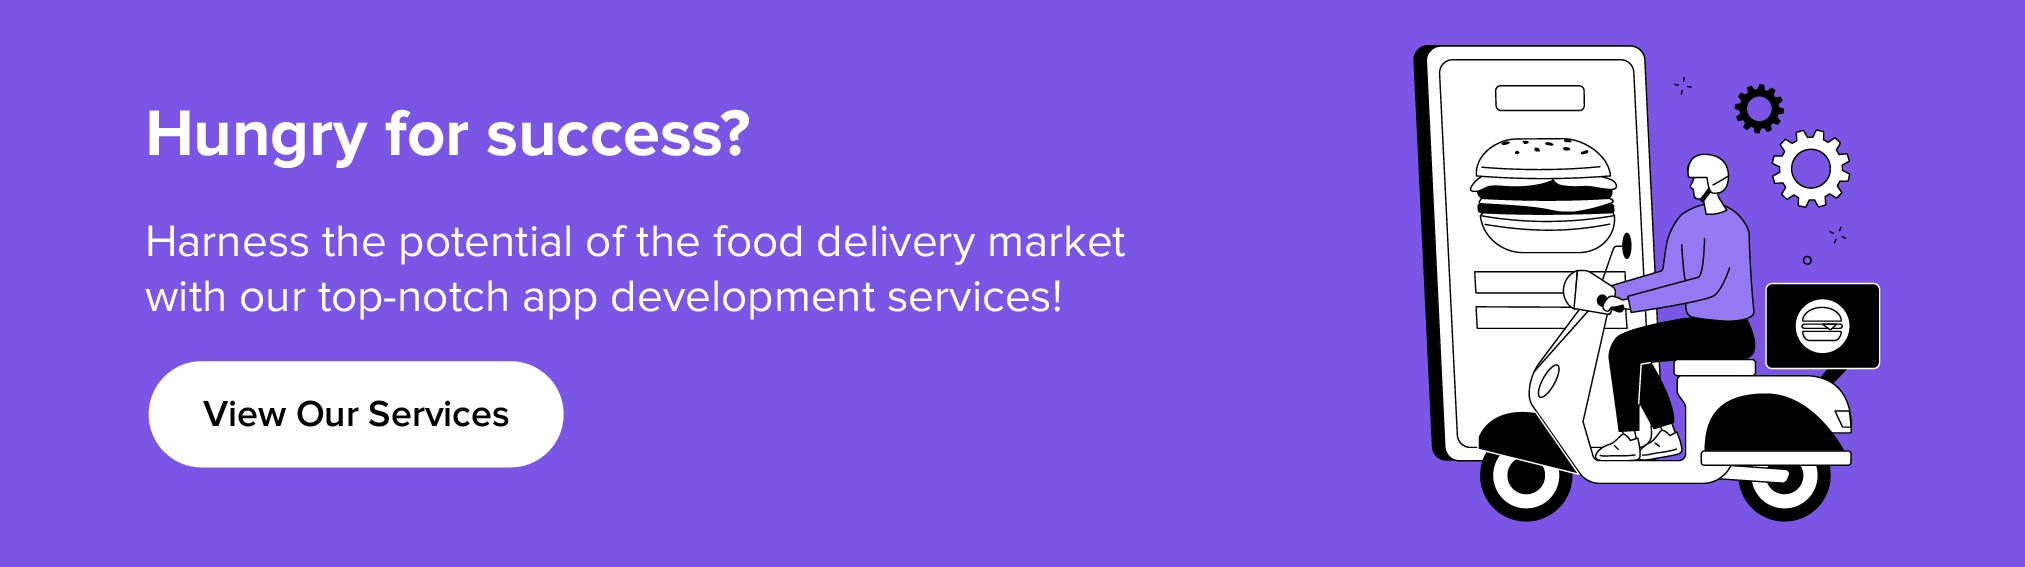 Manfaatkan layanan kami untuk memanfaatkan potensi pasar pesan-antar makanan.